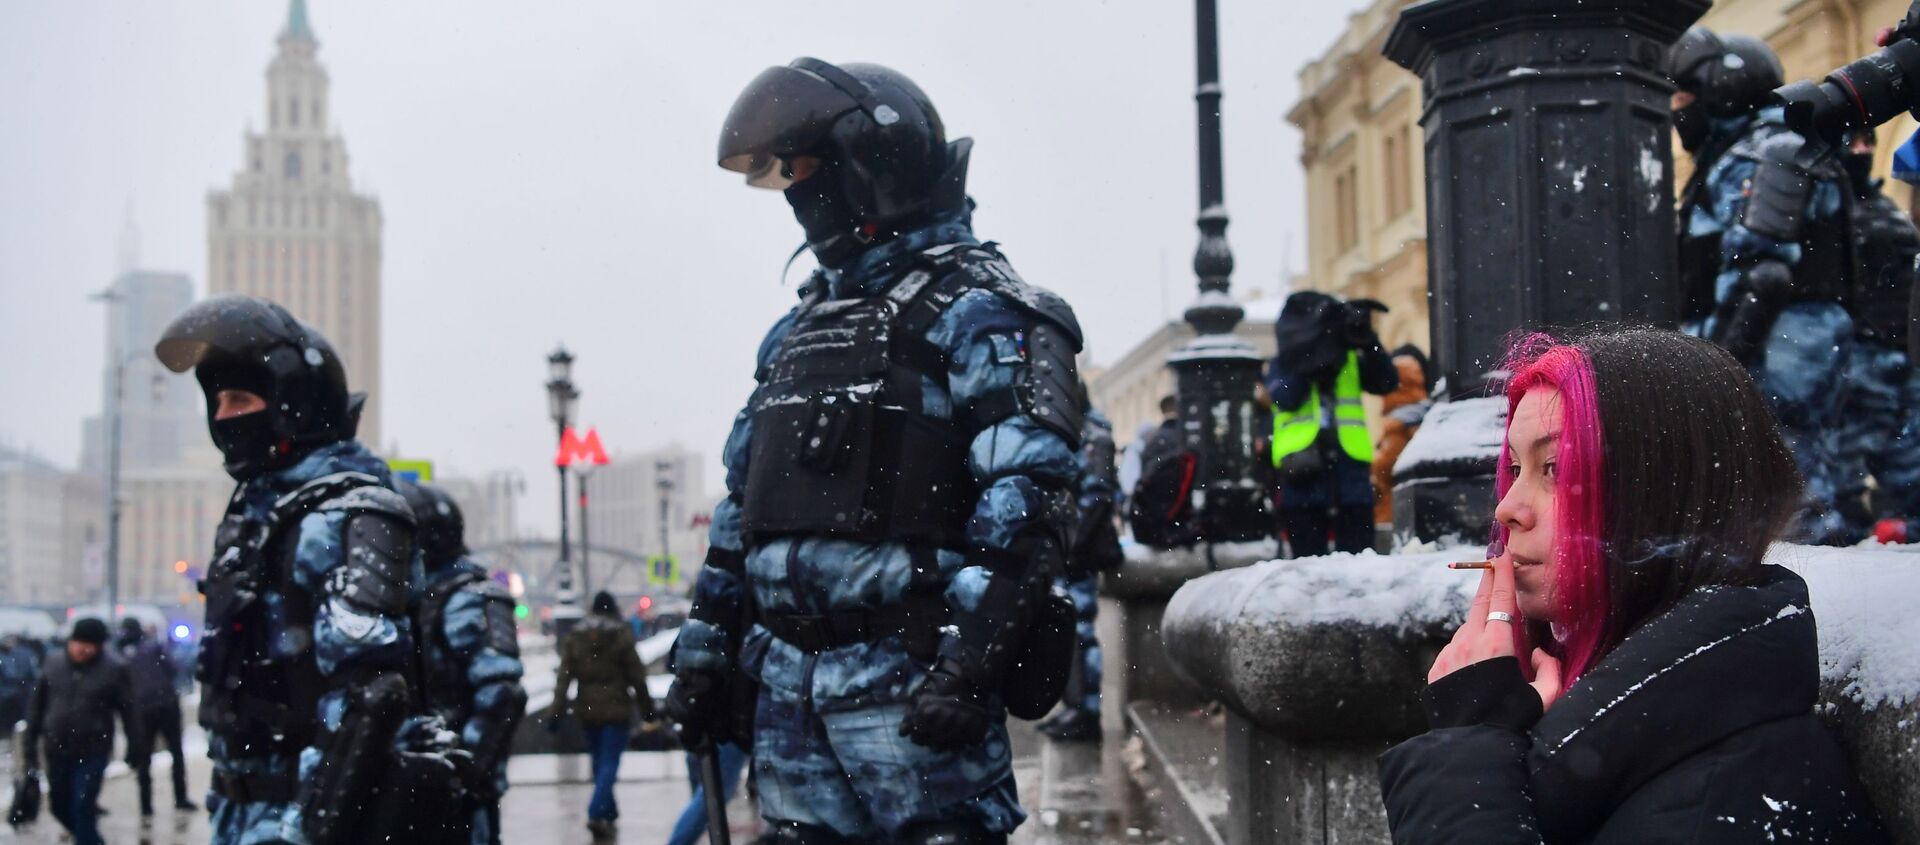 Agentes de seguridad rusos durante las protestas no autorizadas celebradas el 31 de enero en Rusia - Sputnik Mundo, 1920, 09.02.2021